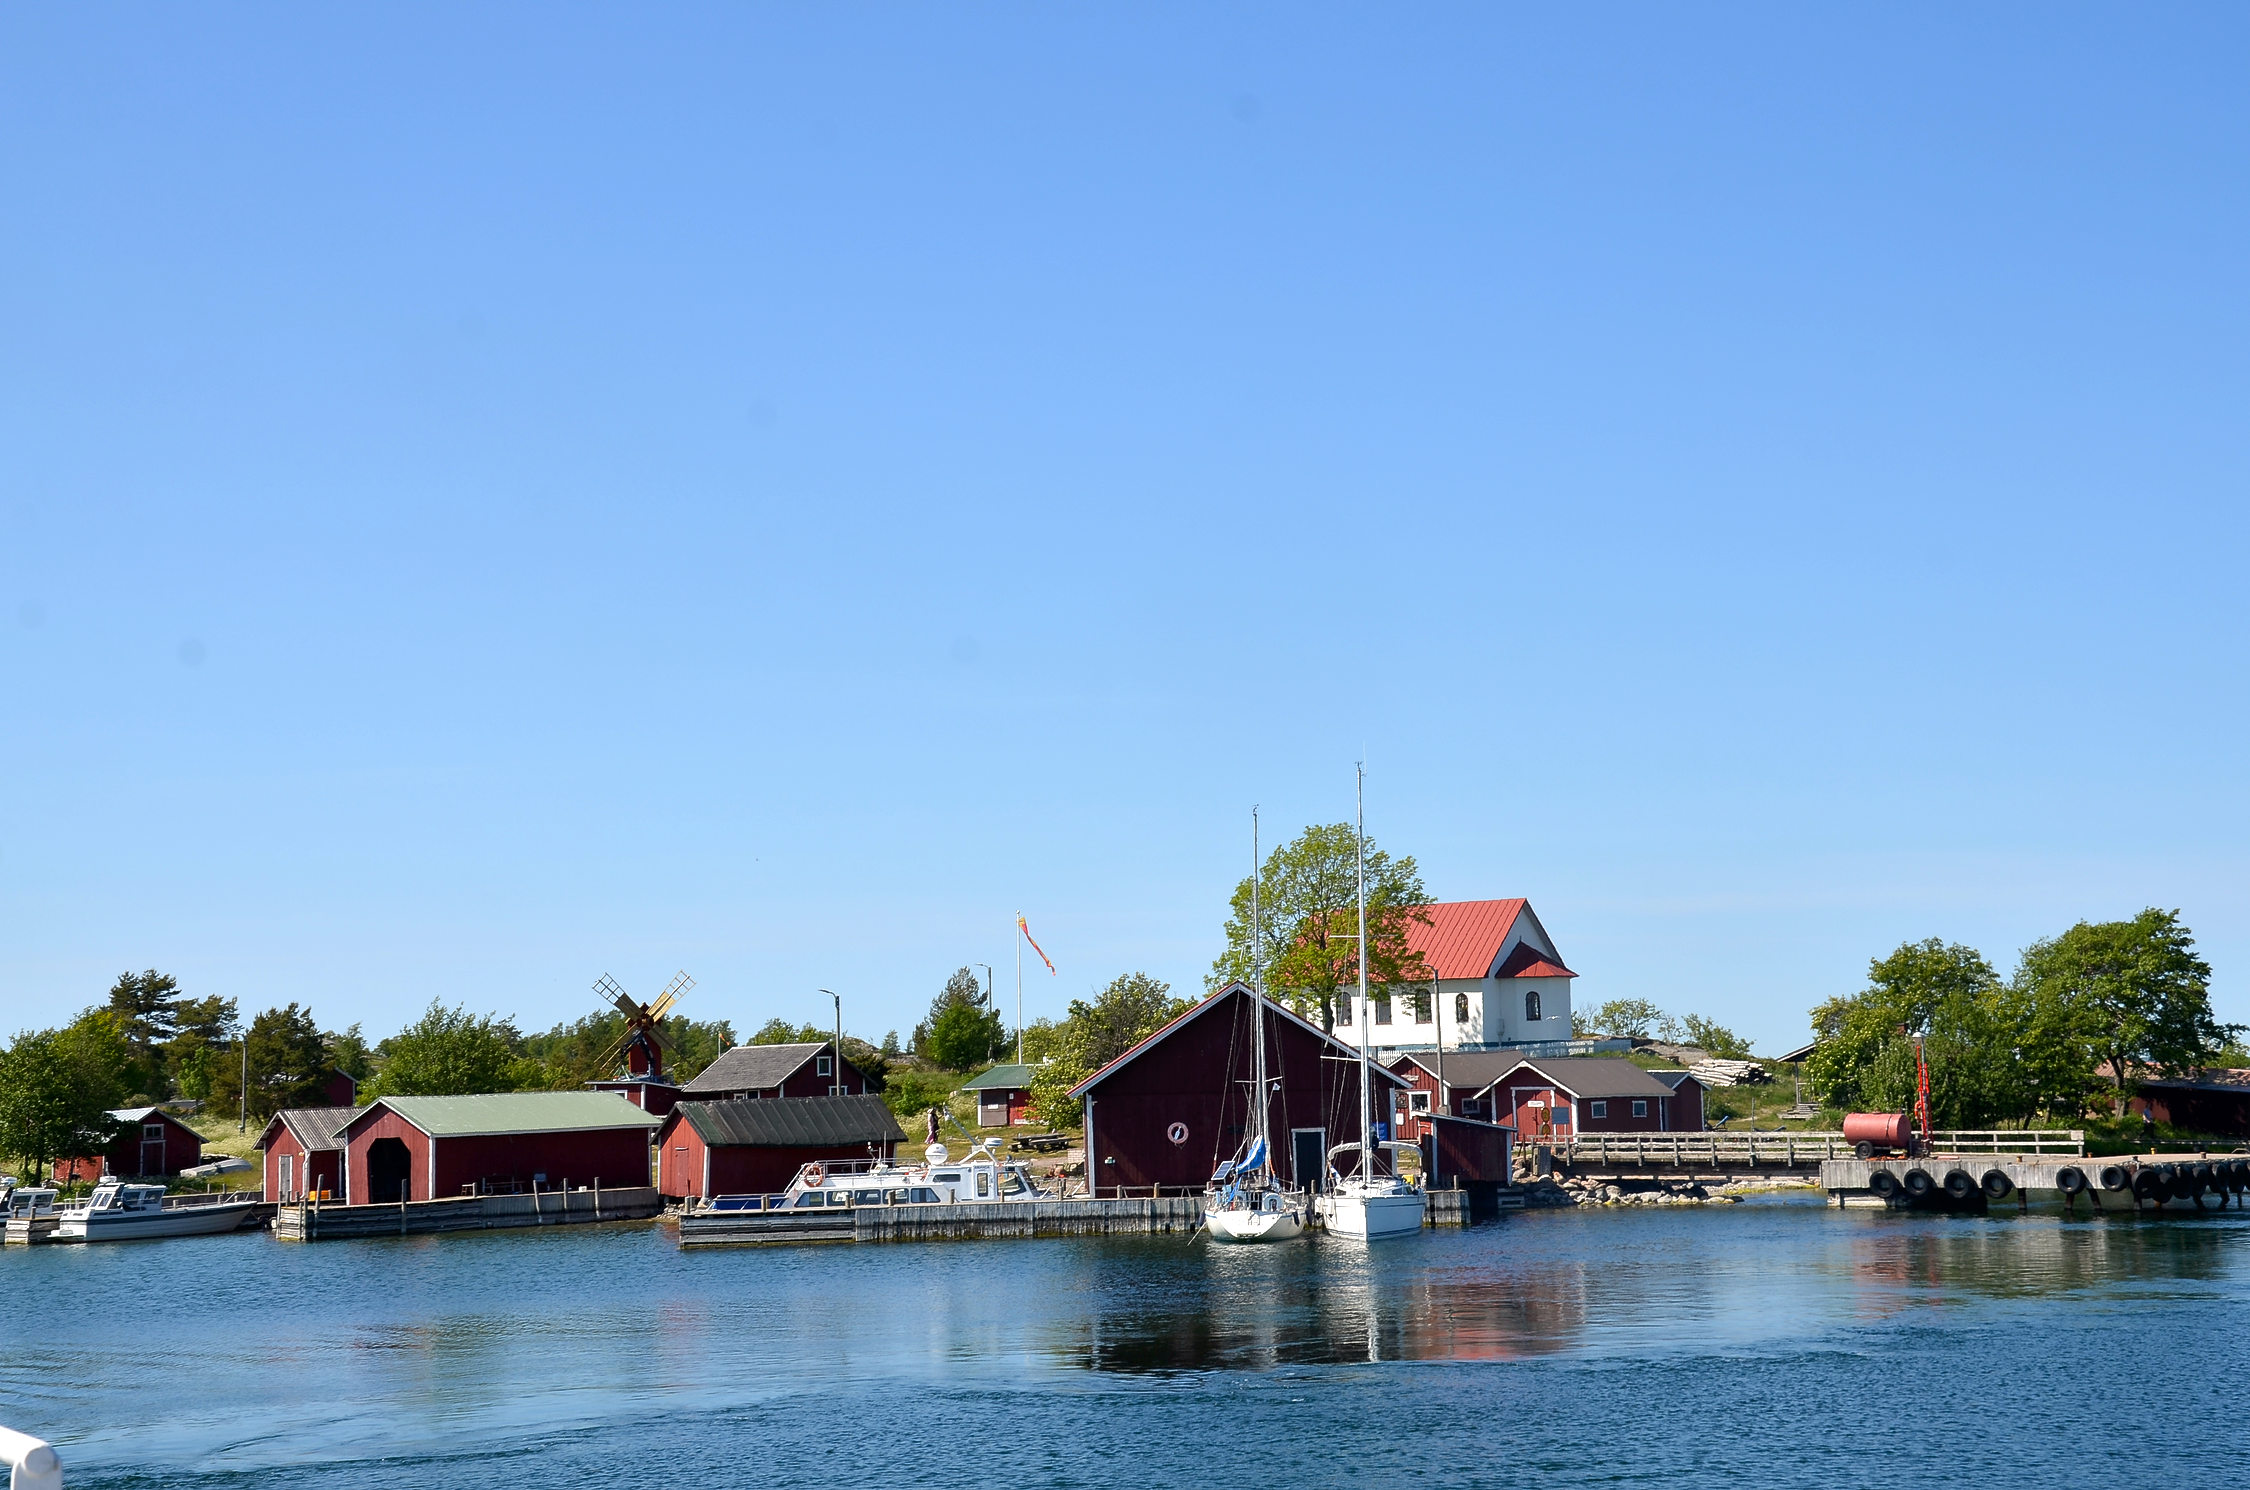 Röda hus, en väderkvarn, ett kapell och ett par segelbåtar på ön. Bilden är tagen från havet.